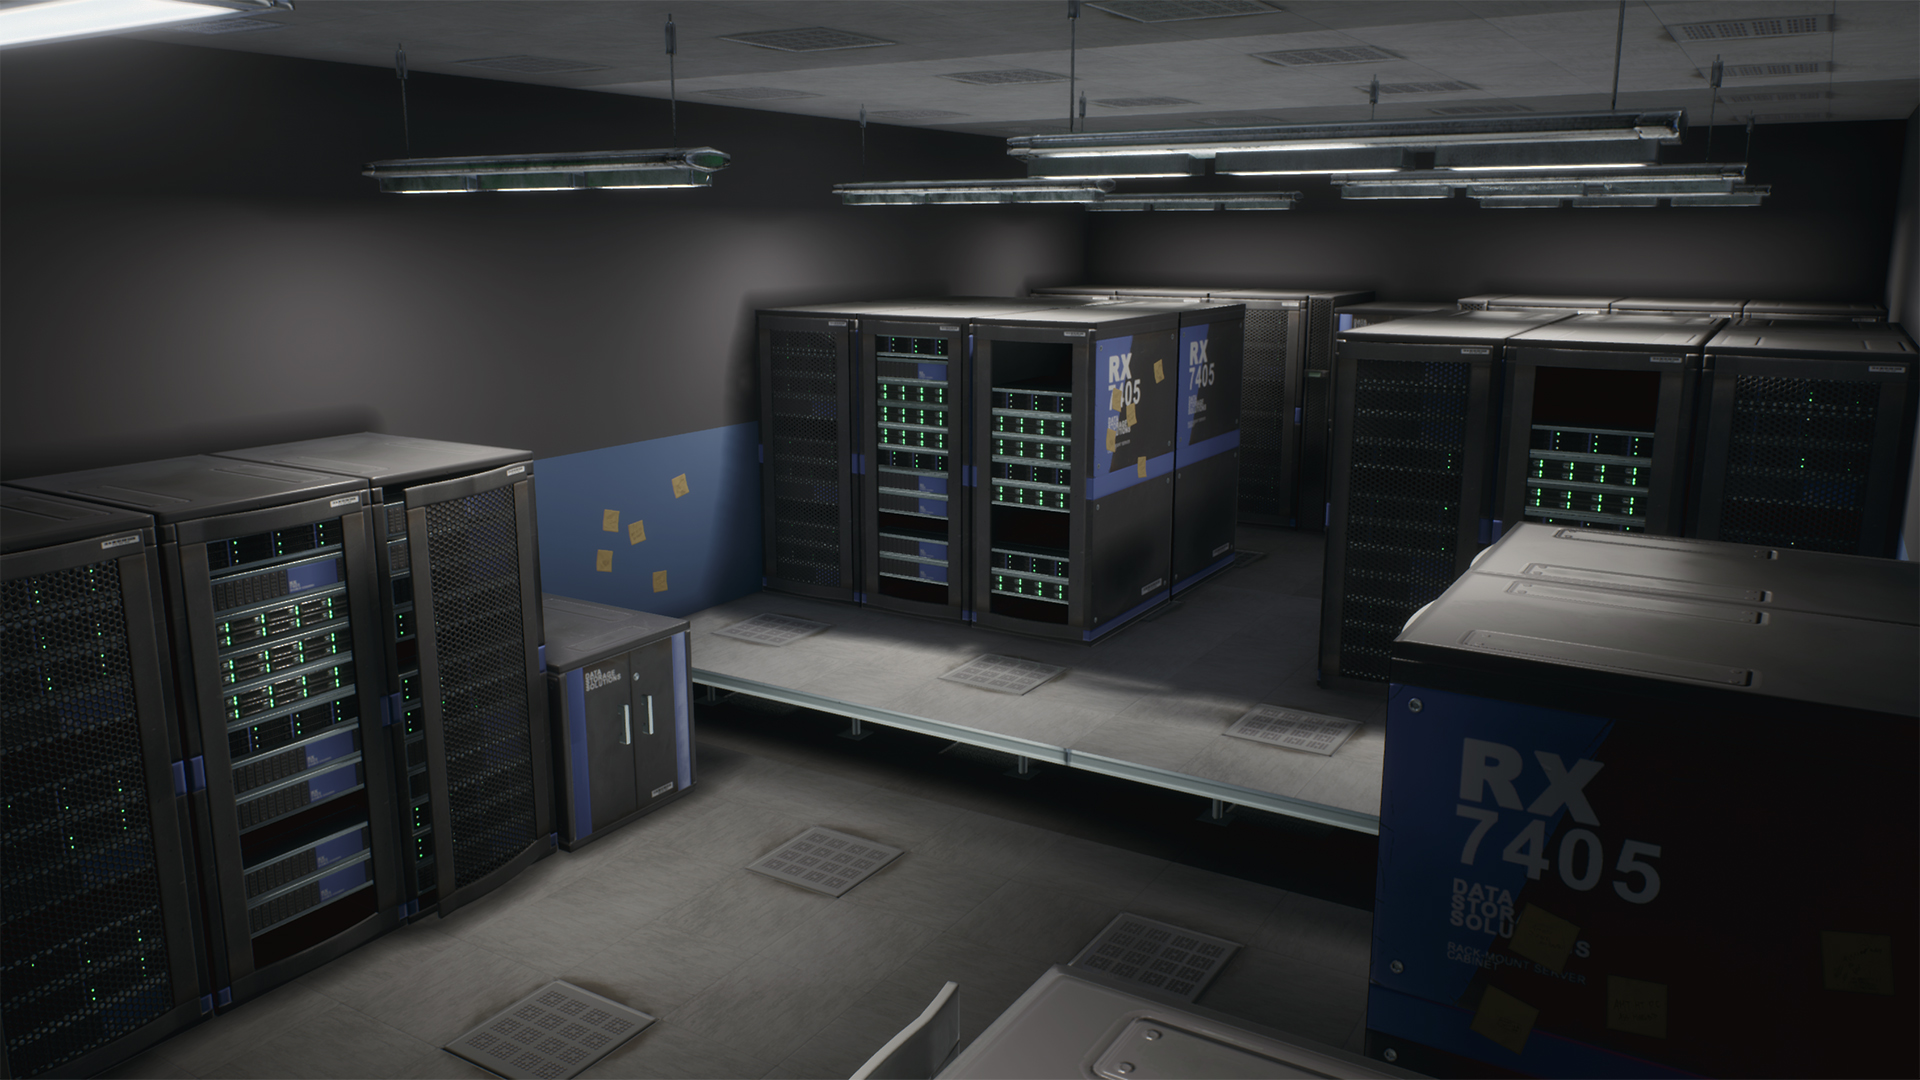 Epic Games Server Room - HD Wallpaper 